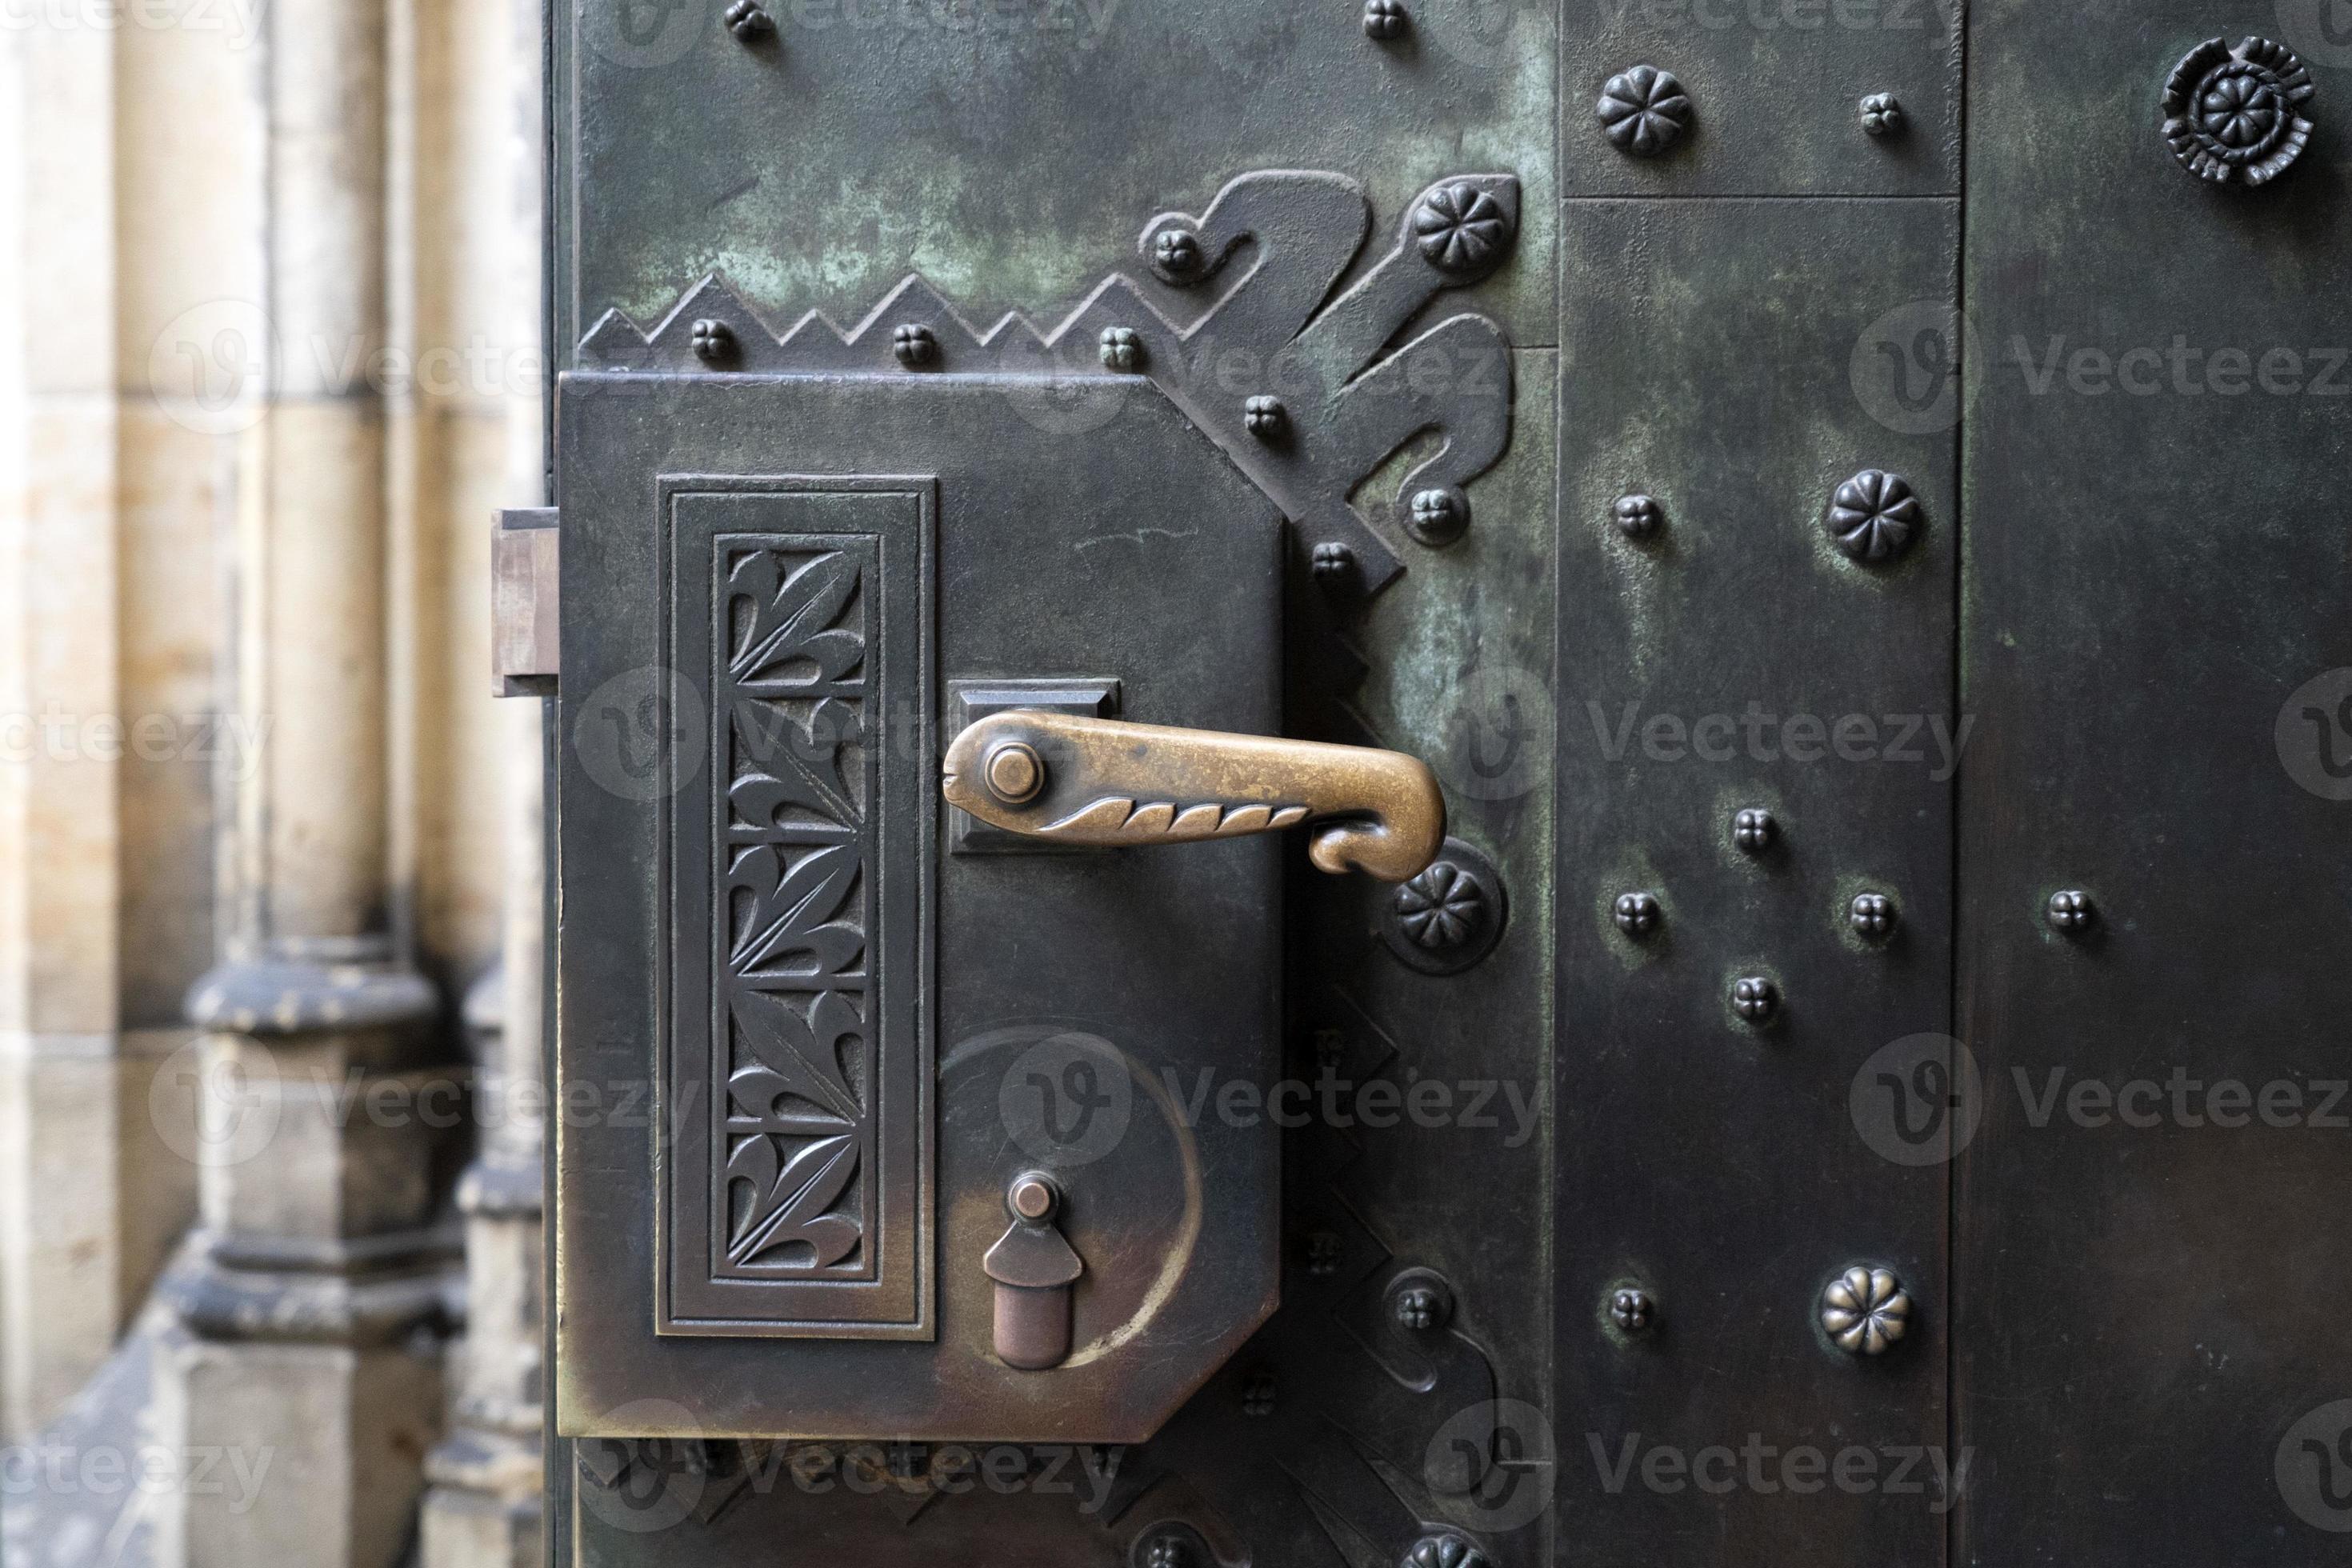 inflatie verwennen kortademigheid Praag koepel kaste heilige vitus kerk deur omgaan met detail 17410415  Stockfoto